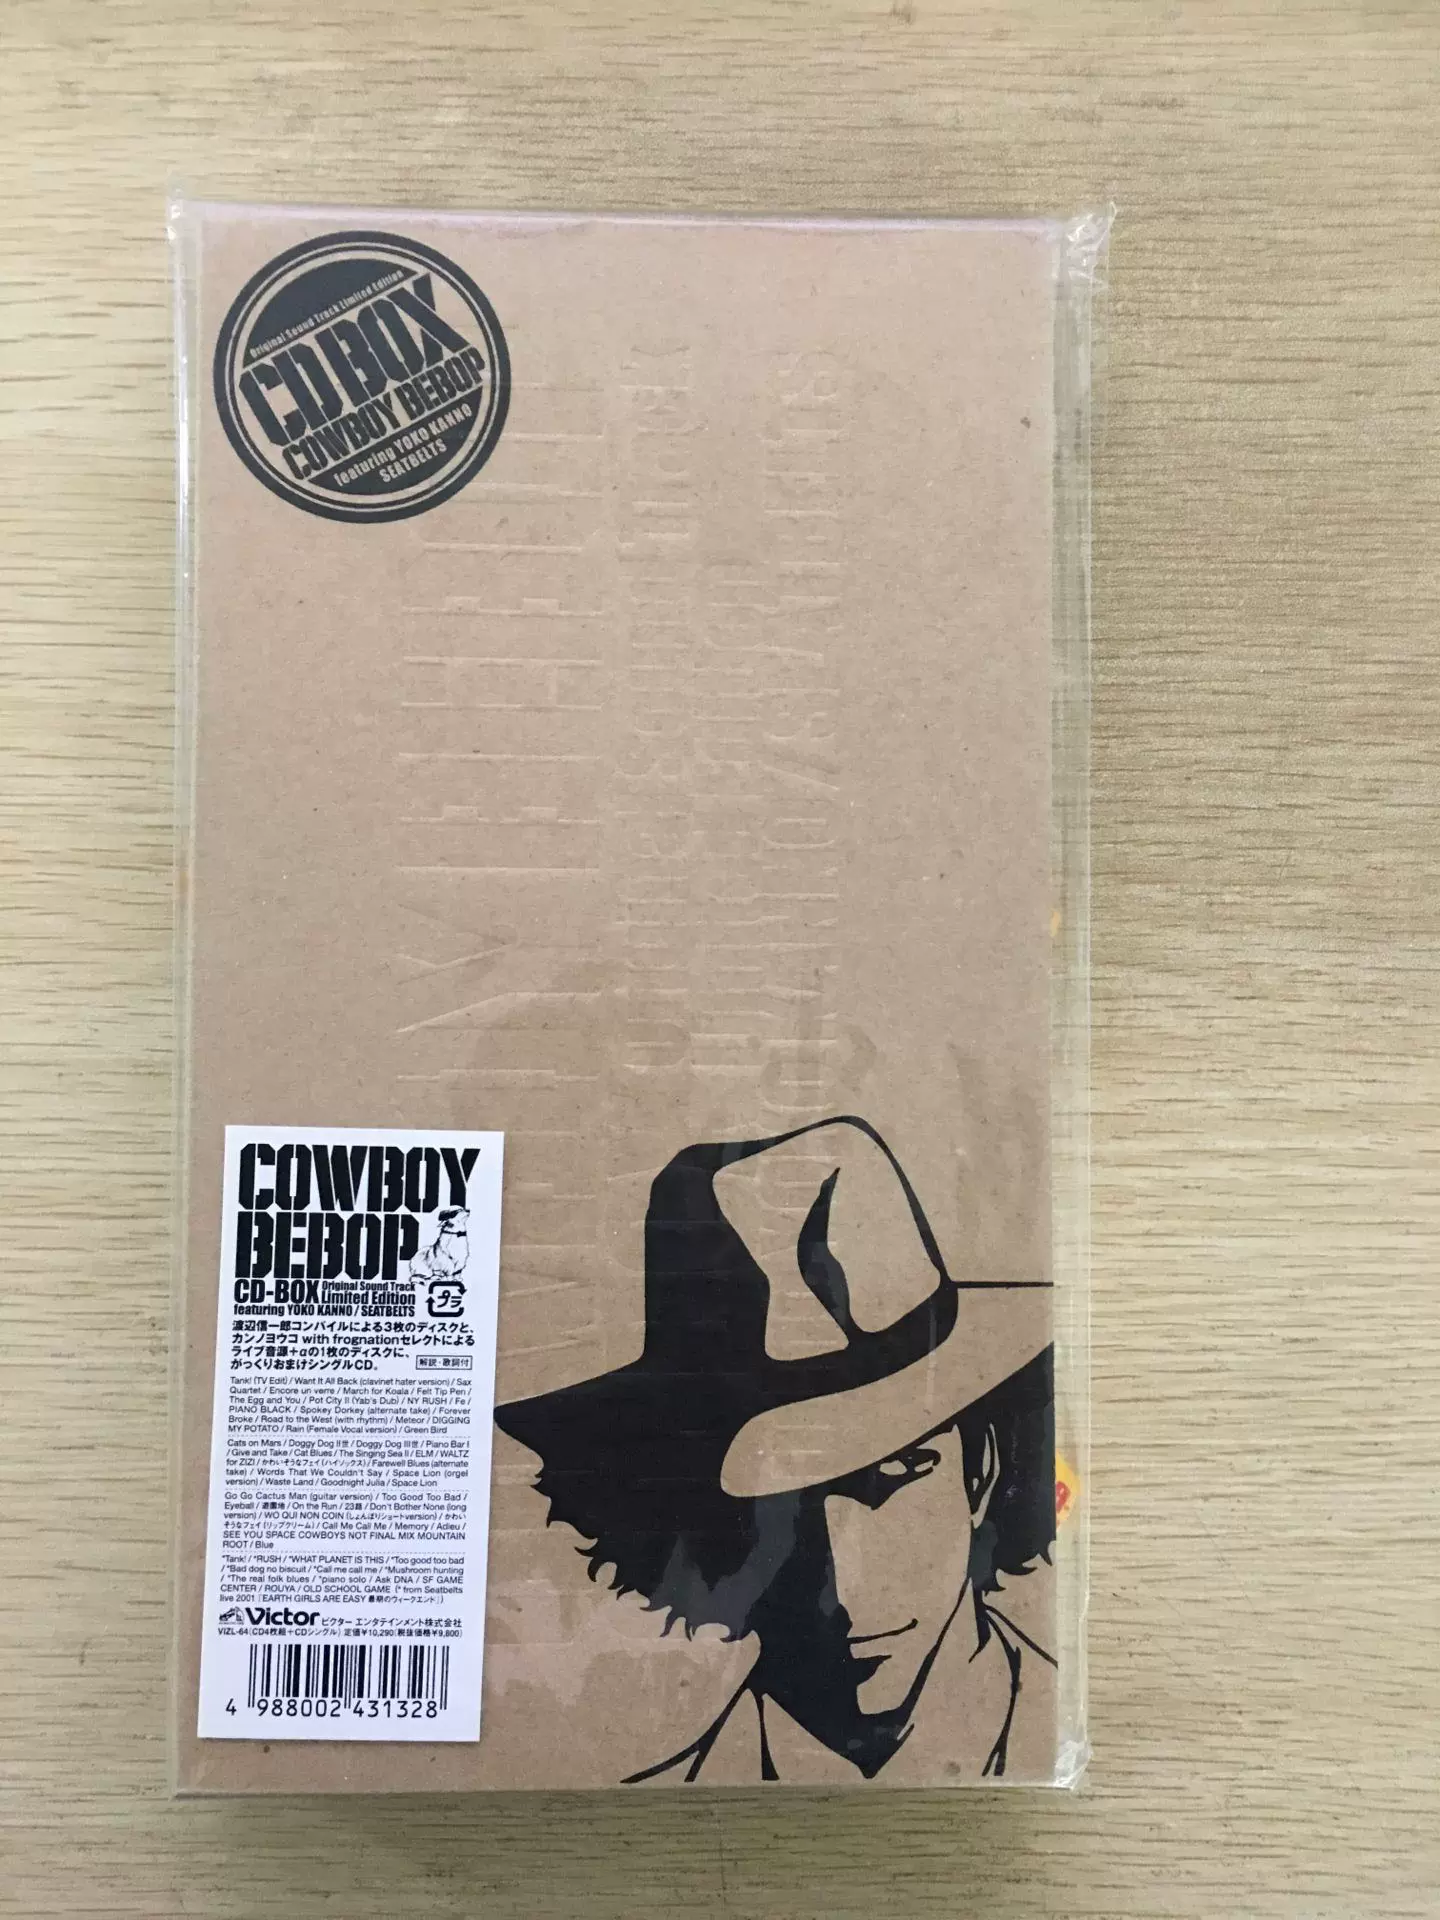 菅野よう子【COWBOY BEBOP】CD-BOX Original 限定版シートベルツ